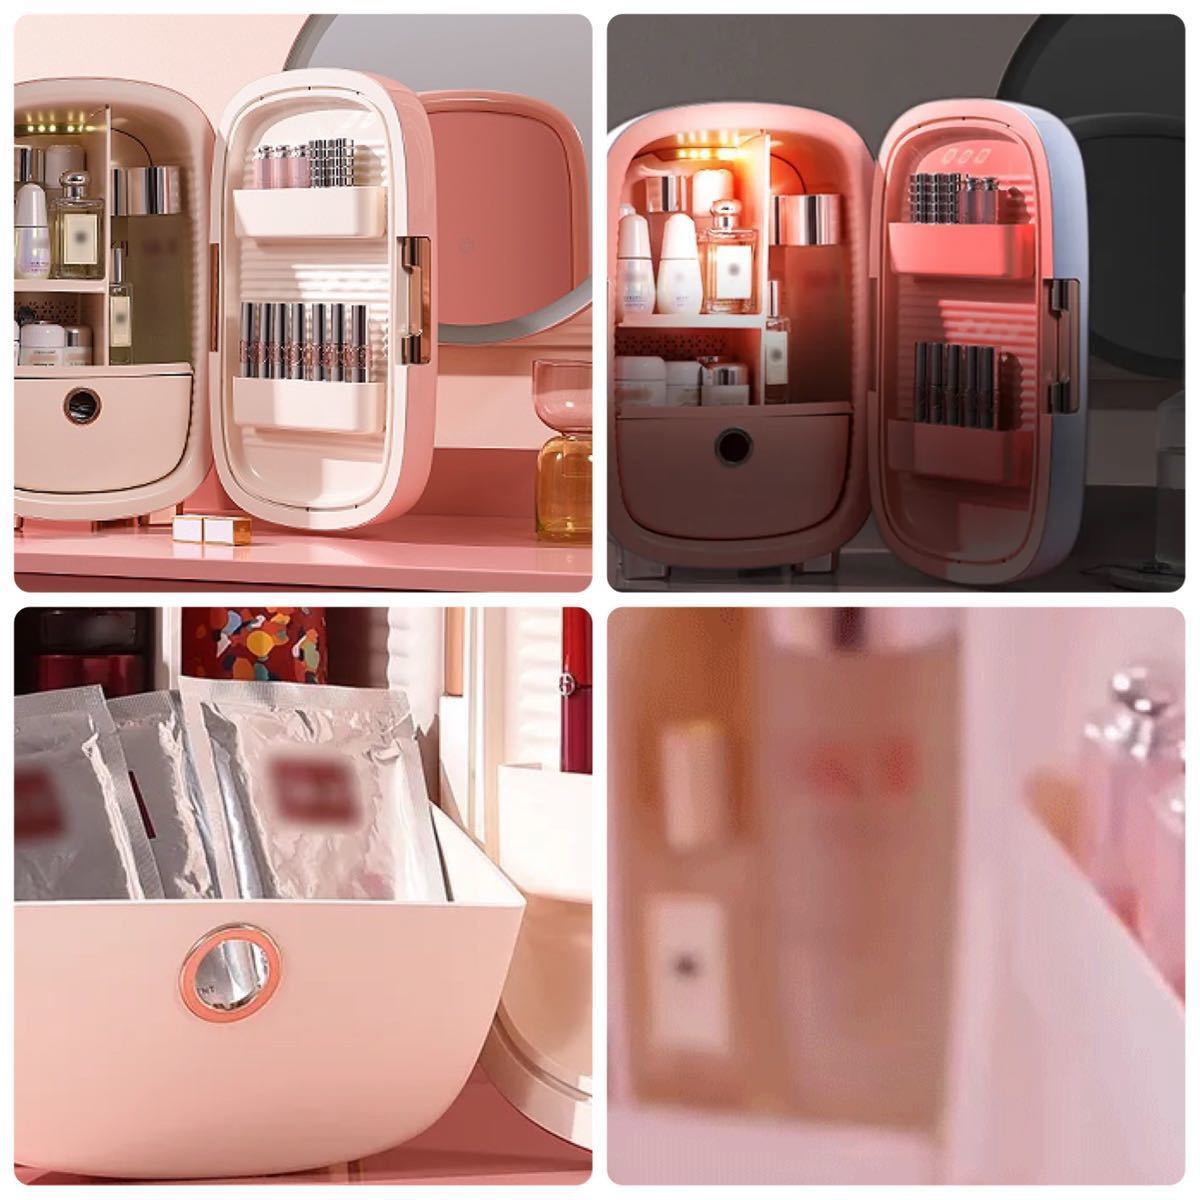 【新品】PINKTOP ピンクトップ コスメクーラー 化粧品 UVカット ミニ冷蔵庫 12L DMB-768-PK 光るハート